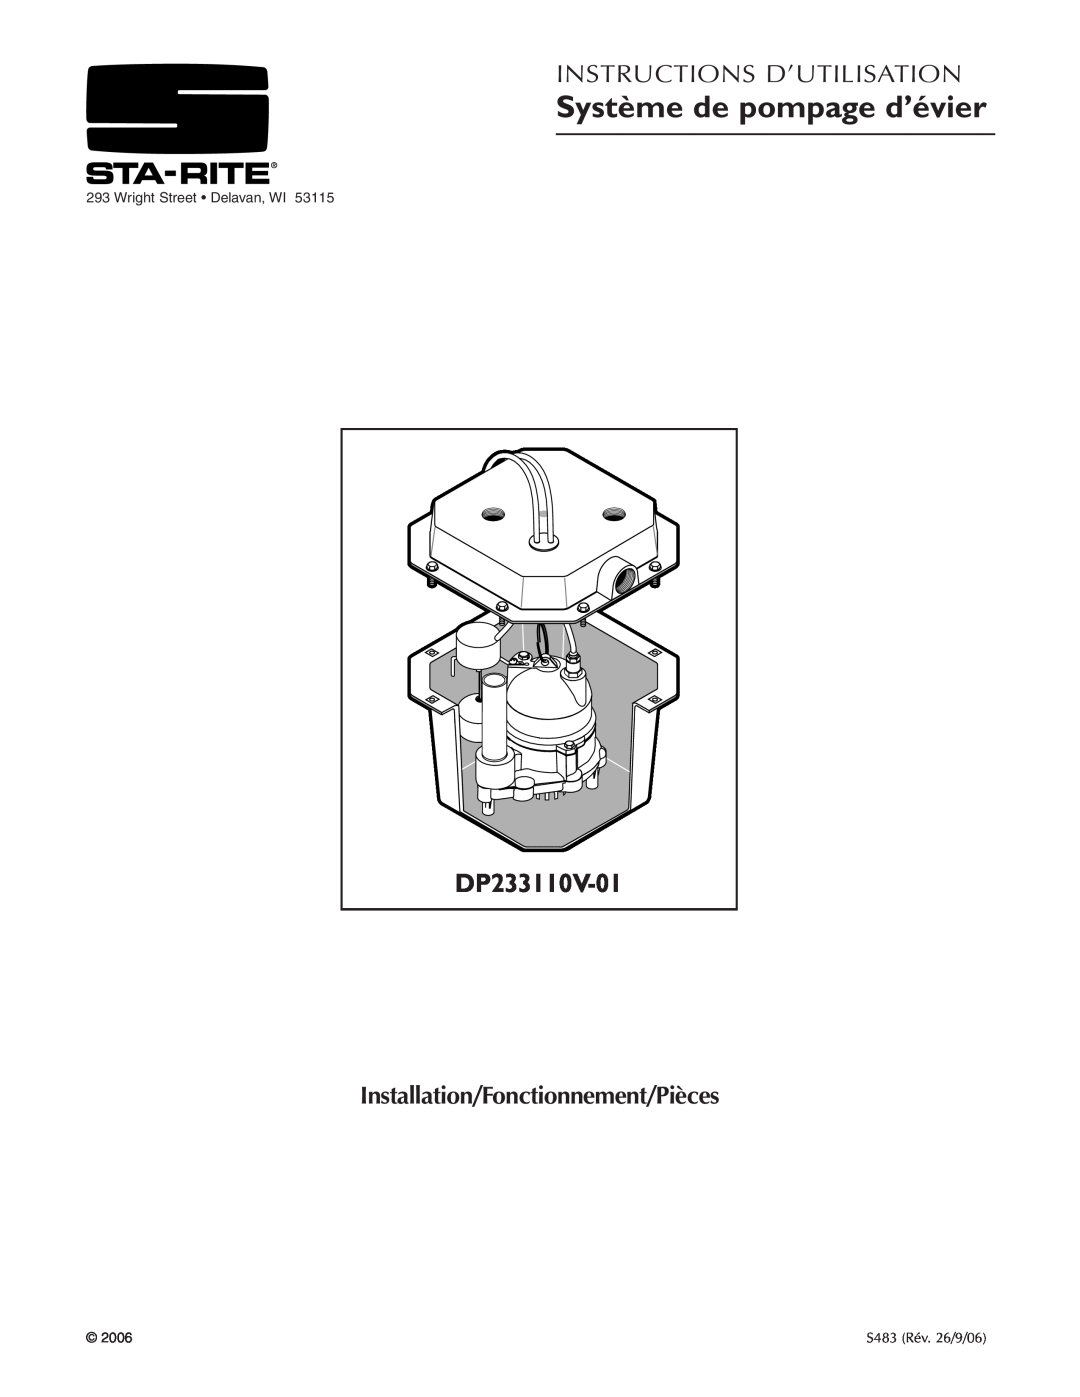 Pentair Système de pompage d’évier, Instructions D’Utilisation, Installation/Fonctionnement/Pièces, DP233110V-01 